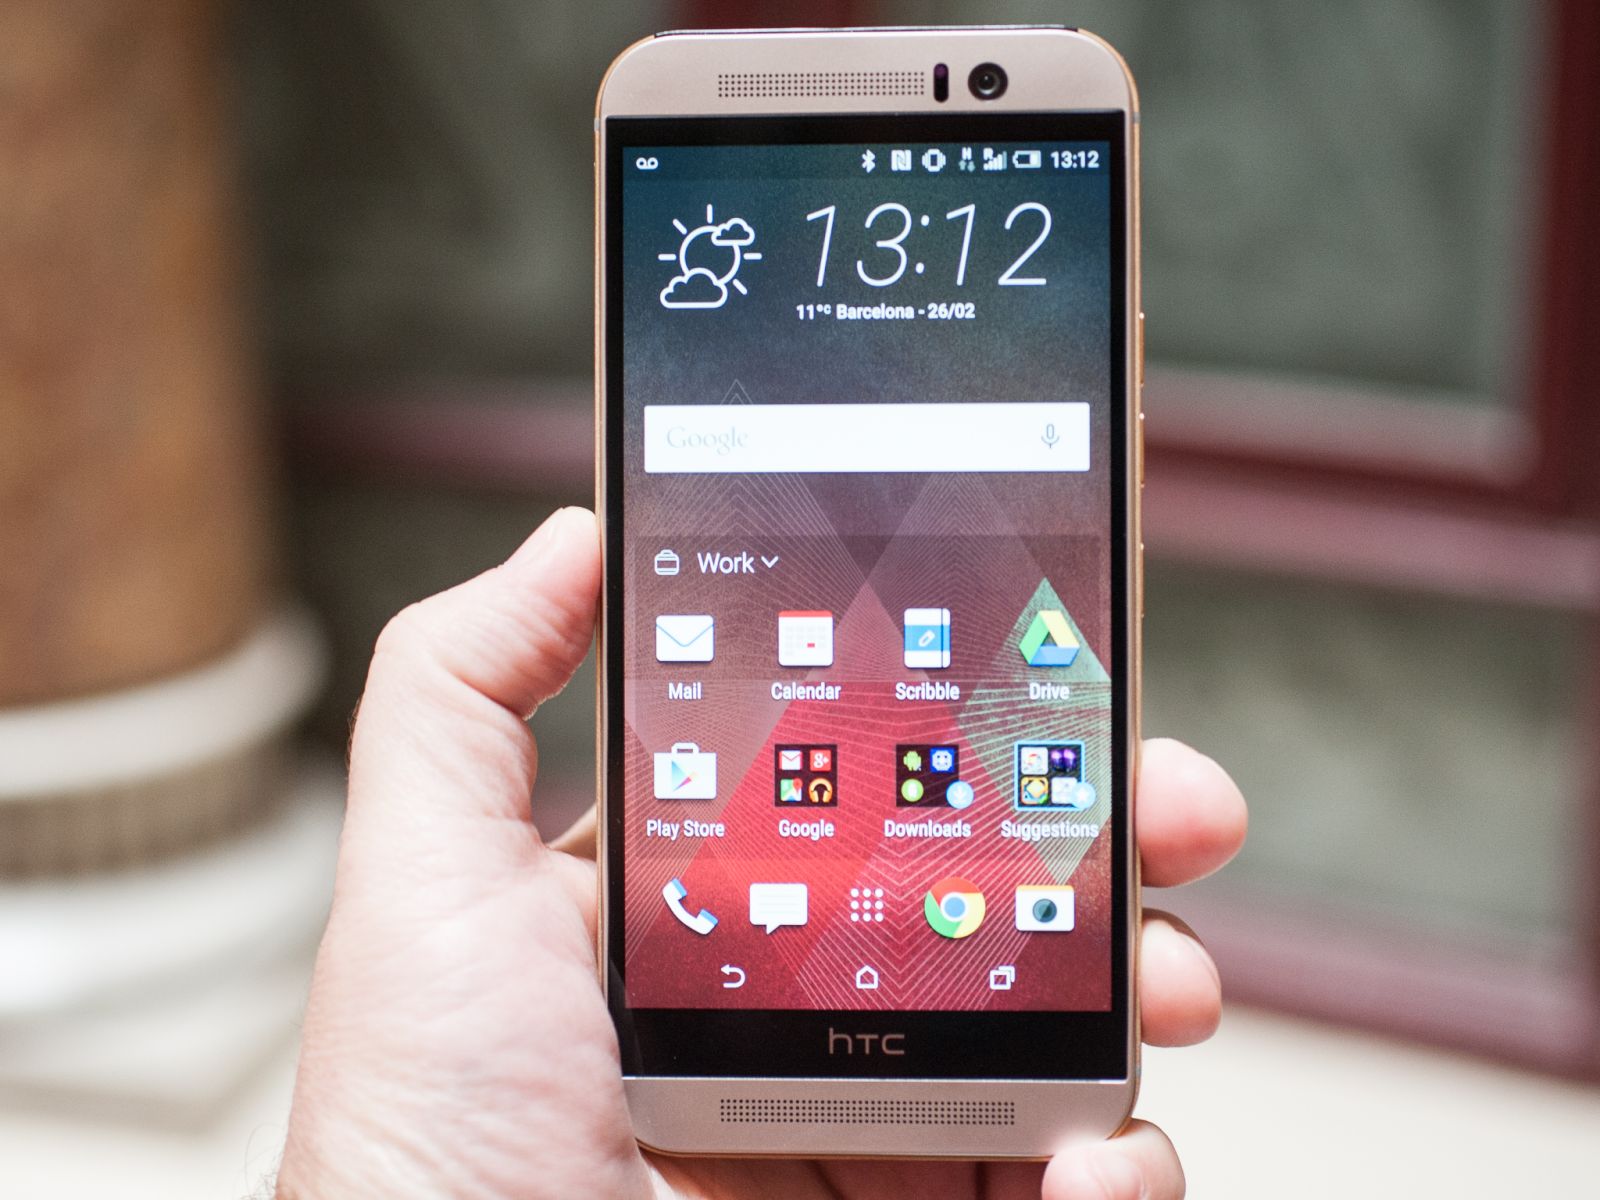 Bảng giá HTC One M9 cũ xách tay tại MSmobile thời điểm hiện tại